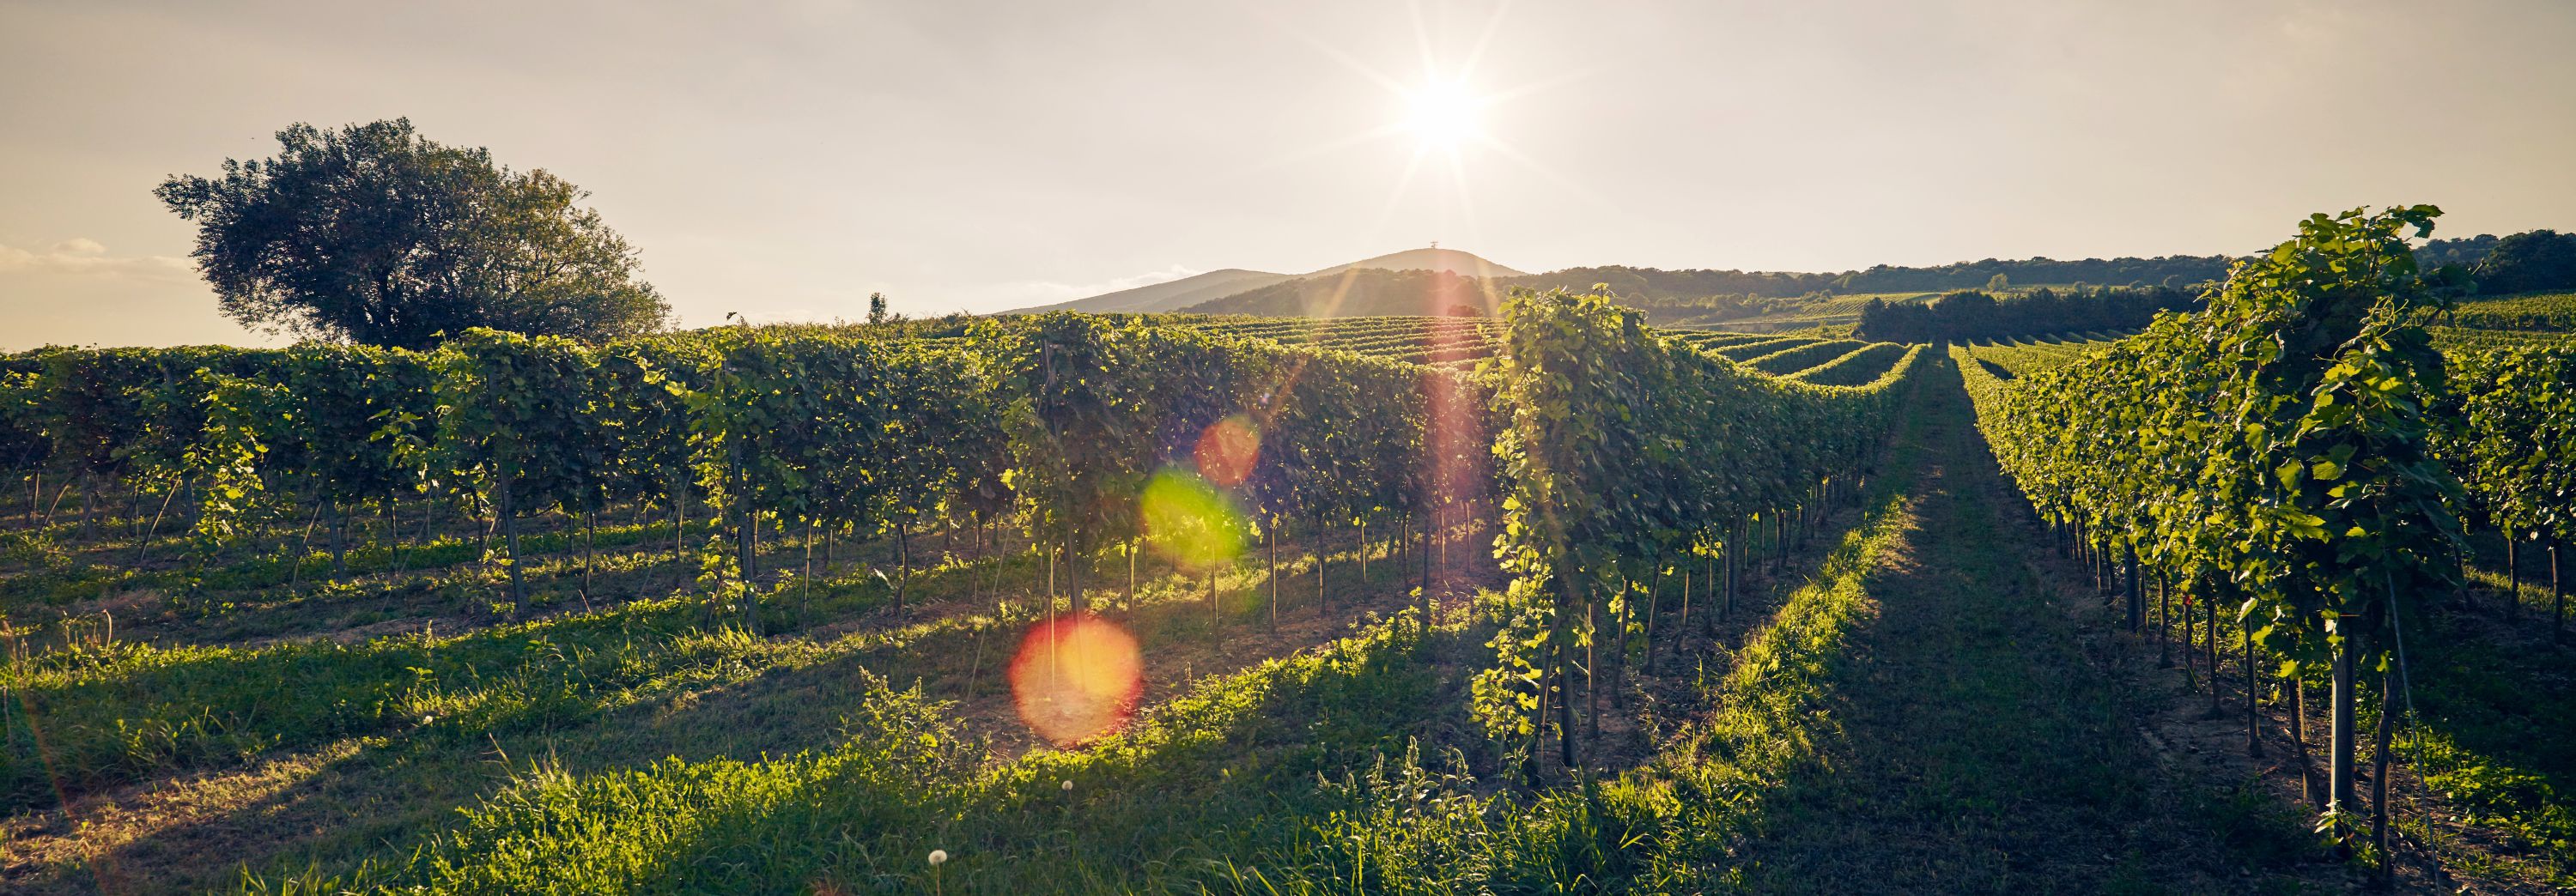 Ein Blick in einen Weingarten zur Abendsonne.